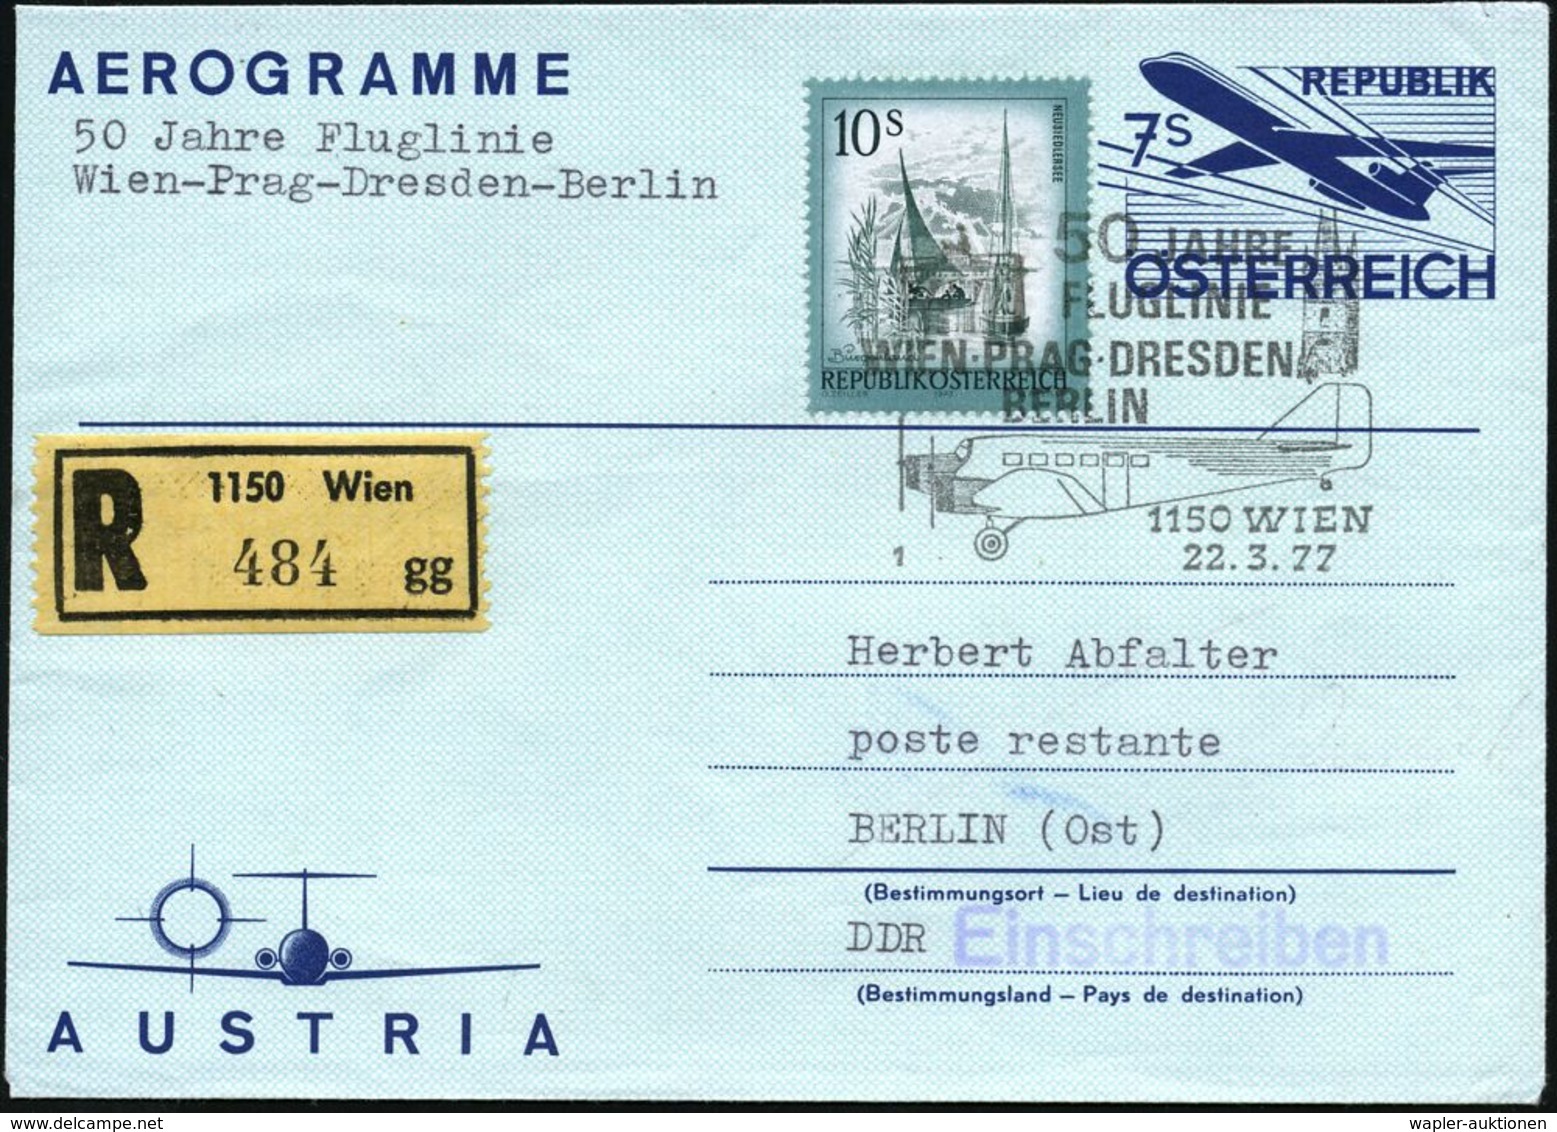 ÖSTERREICH 1977 (22.3.) 7 S. Aerogramm + 10 S. Dauerserie, SSt: 1150 WIEN/1/50 JAHRE/FLUGLINIE/WIEN-PRAG-DRESDEN/ BERLIN - Flugzeuge